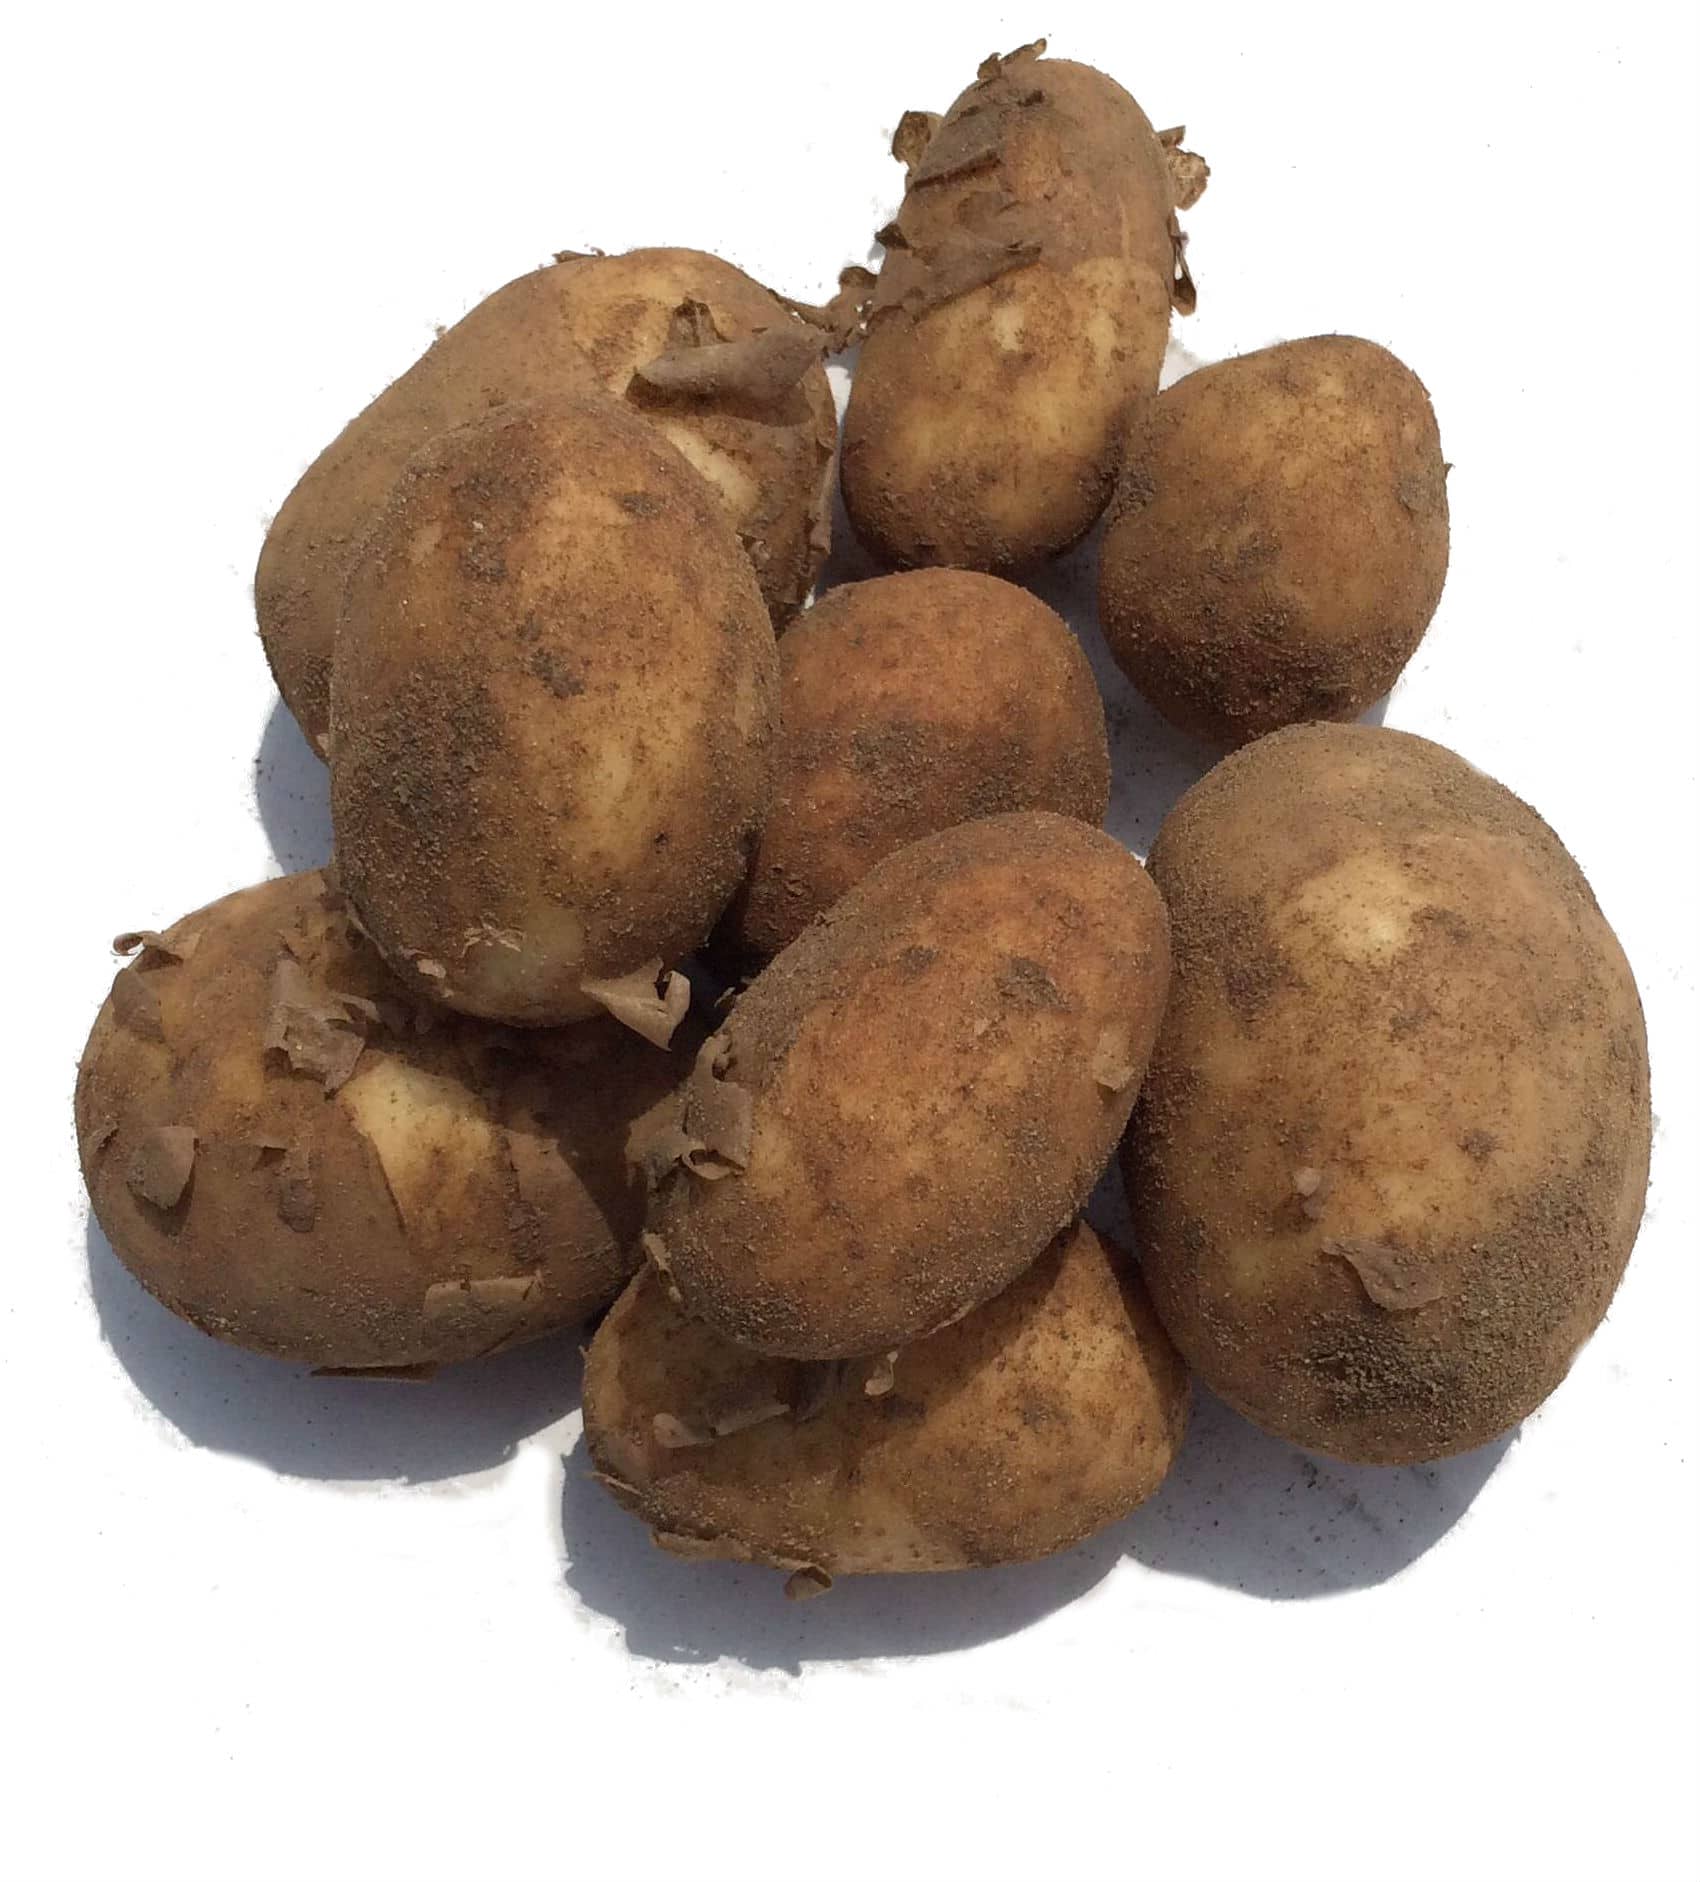 https://norfolkvegbox.com/themestatic/uploads/2014/07/New-Potatoes-website.jpg